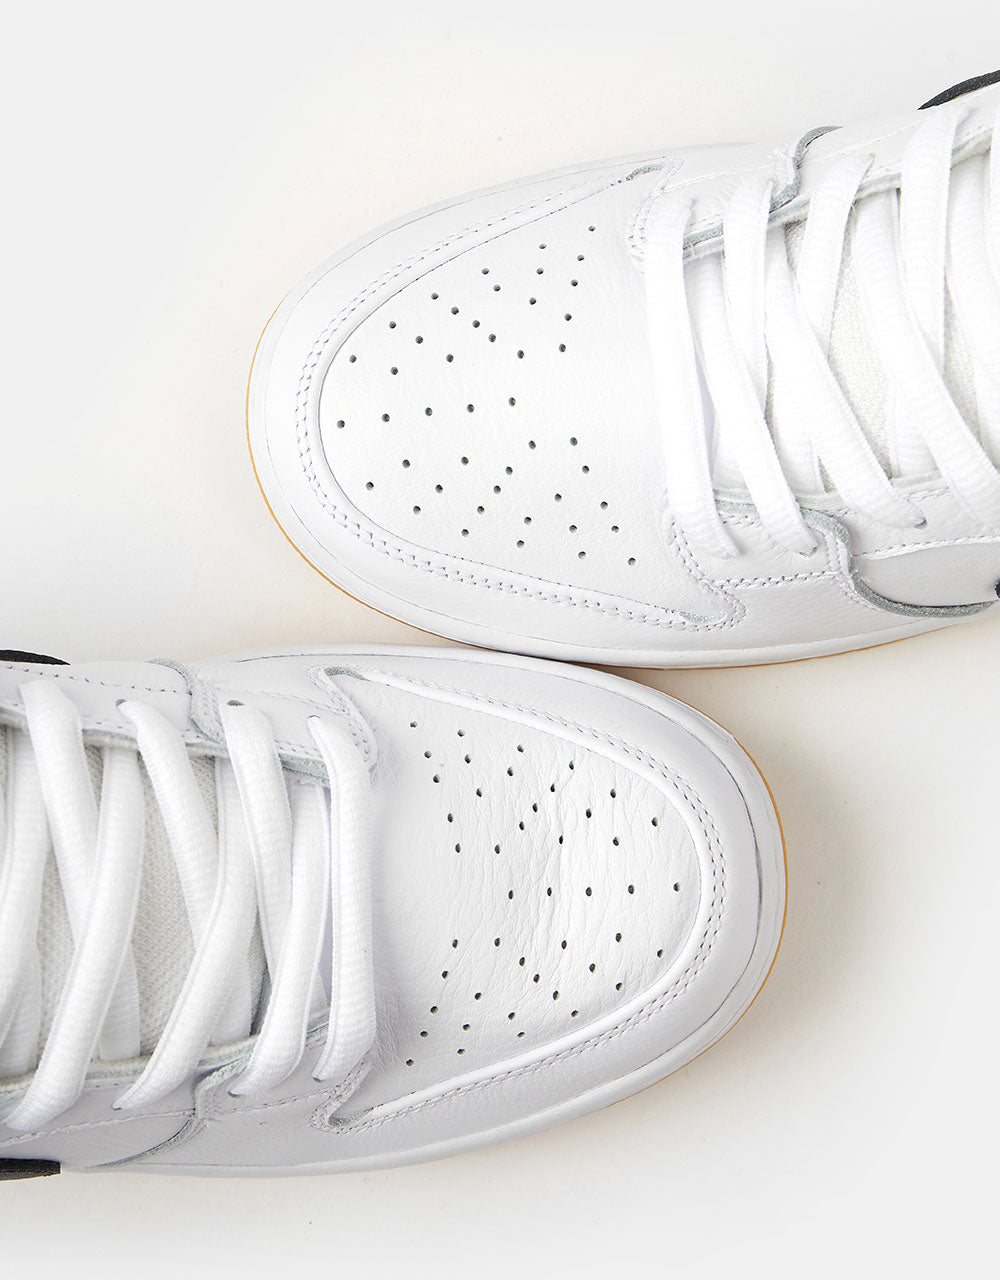 Nike SB Dunk Low Pro Premium Skate Shoes - White/Black-White-Gum Light ...